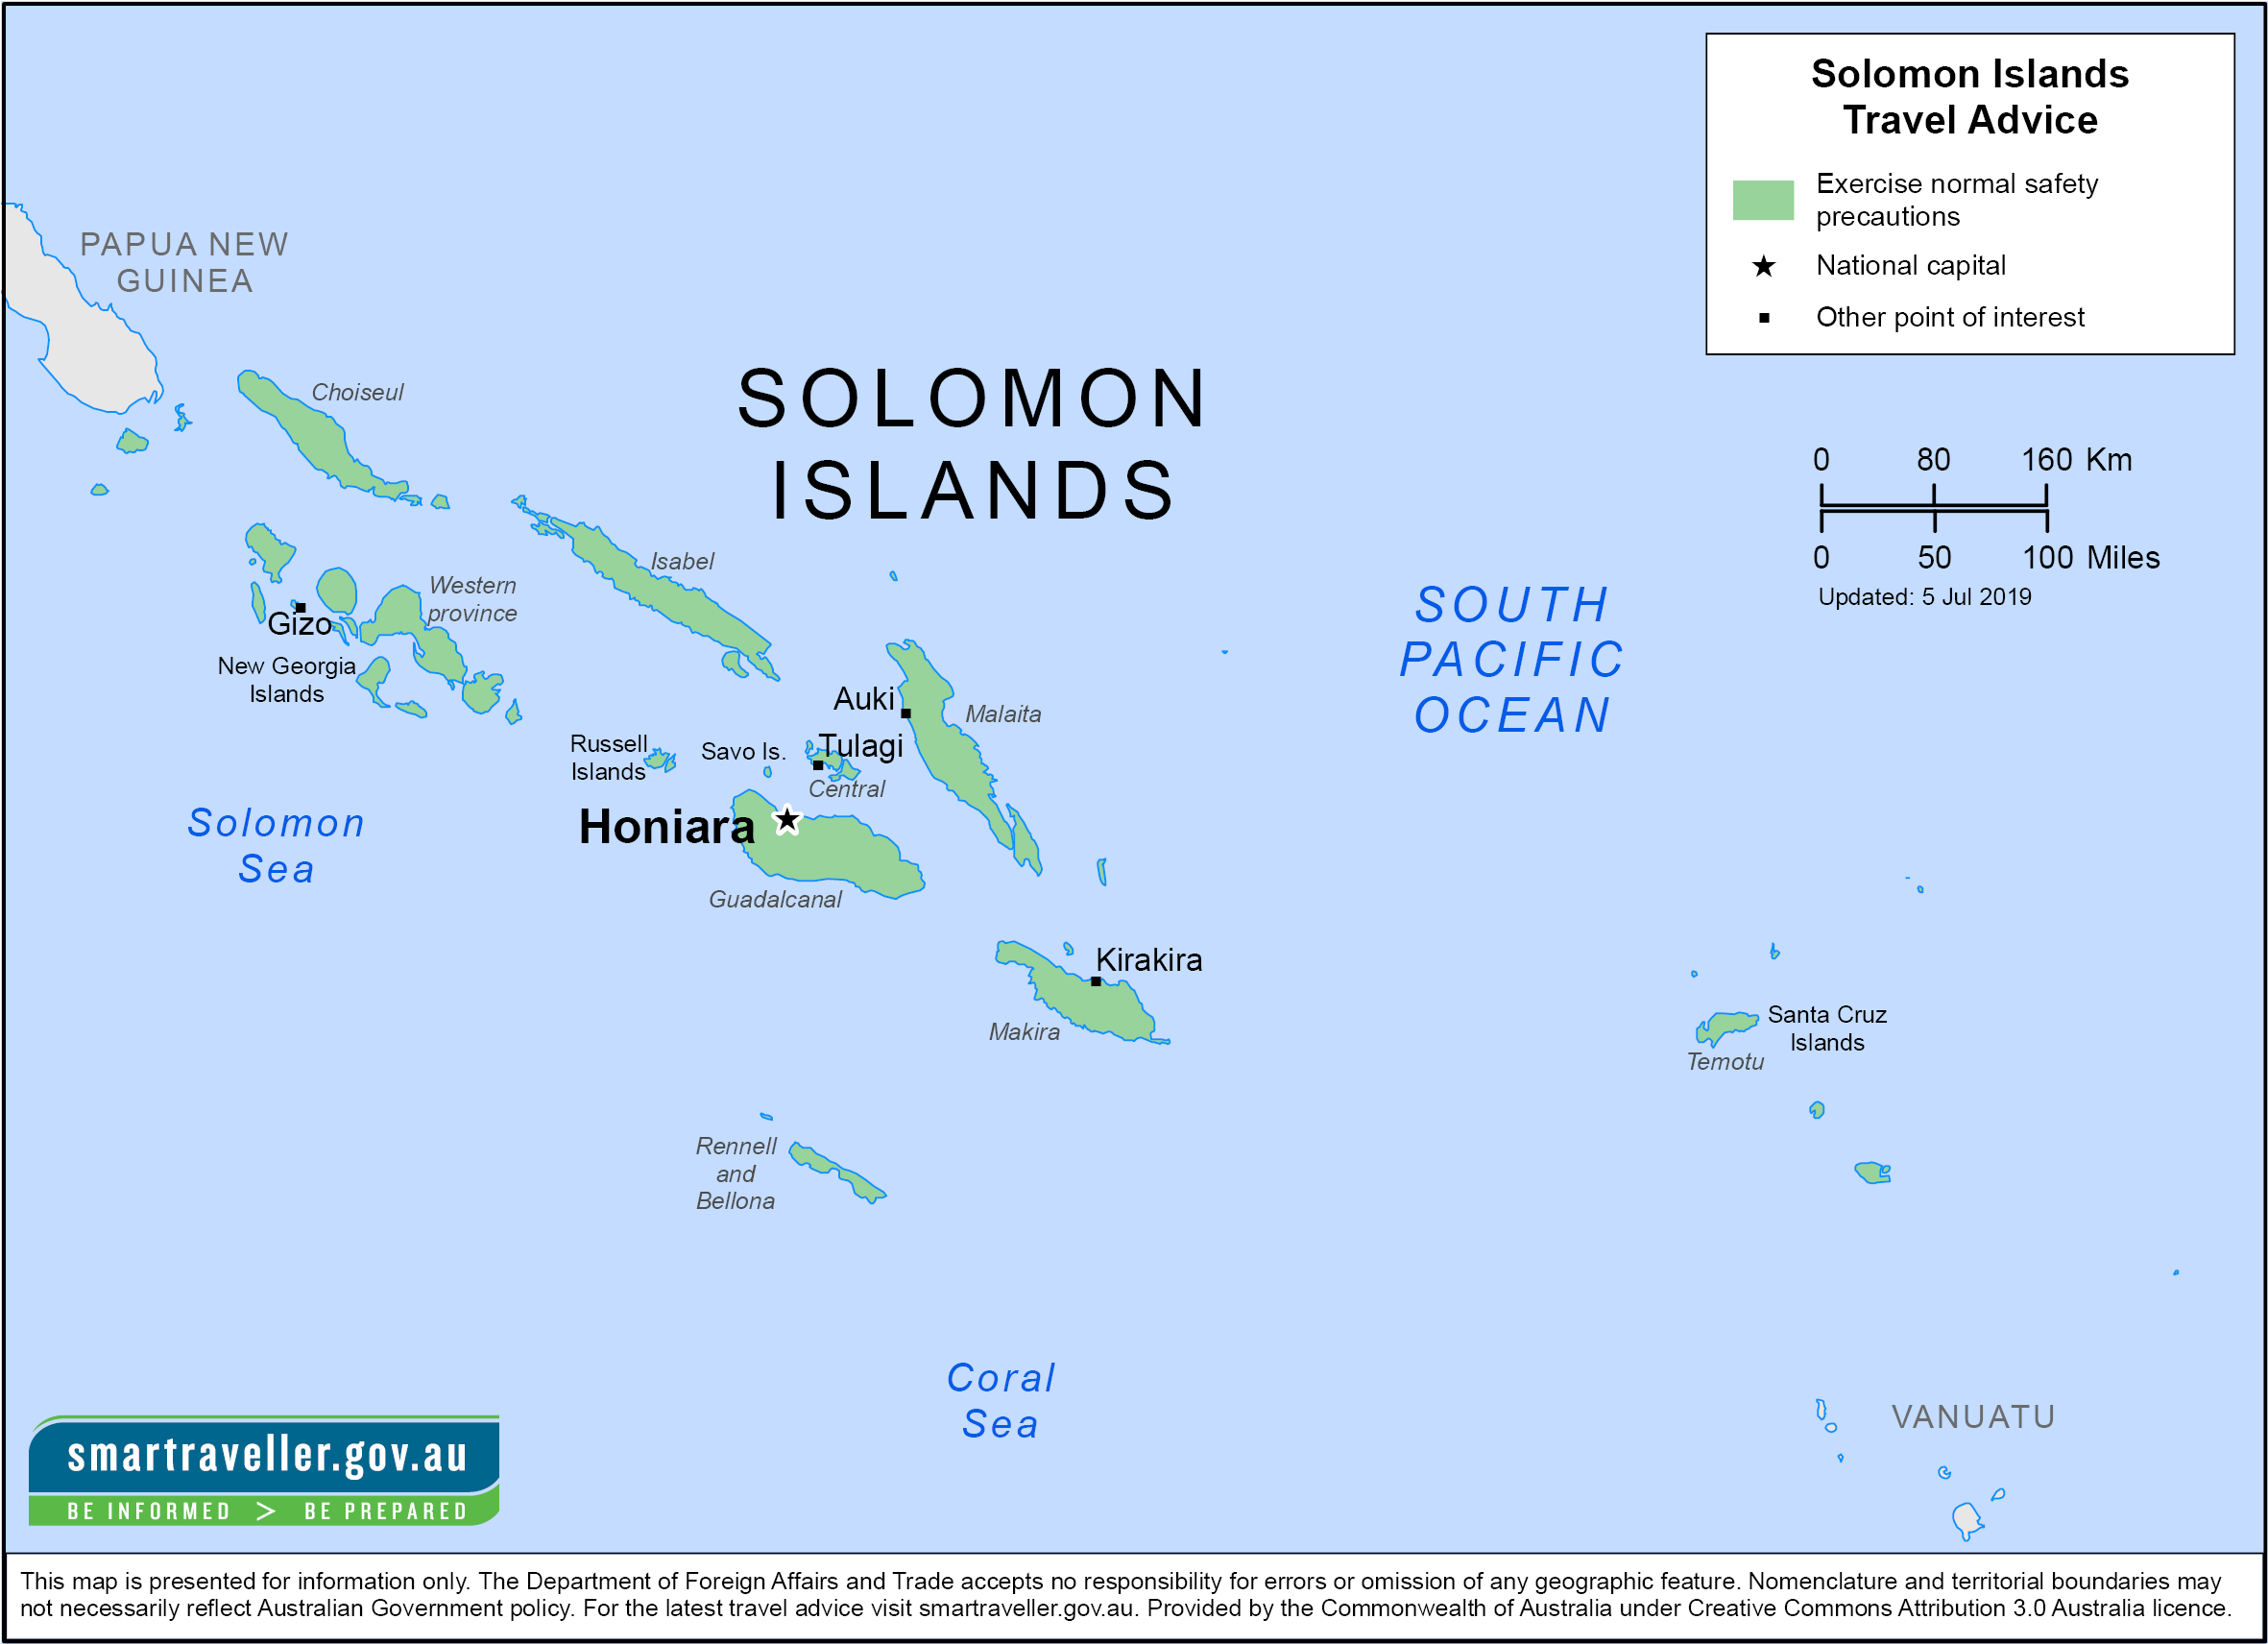 جزایر اقیانوس آرام، در قلب رویارویی قدرت های جهانی